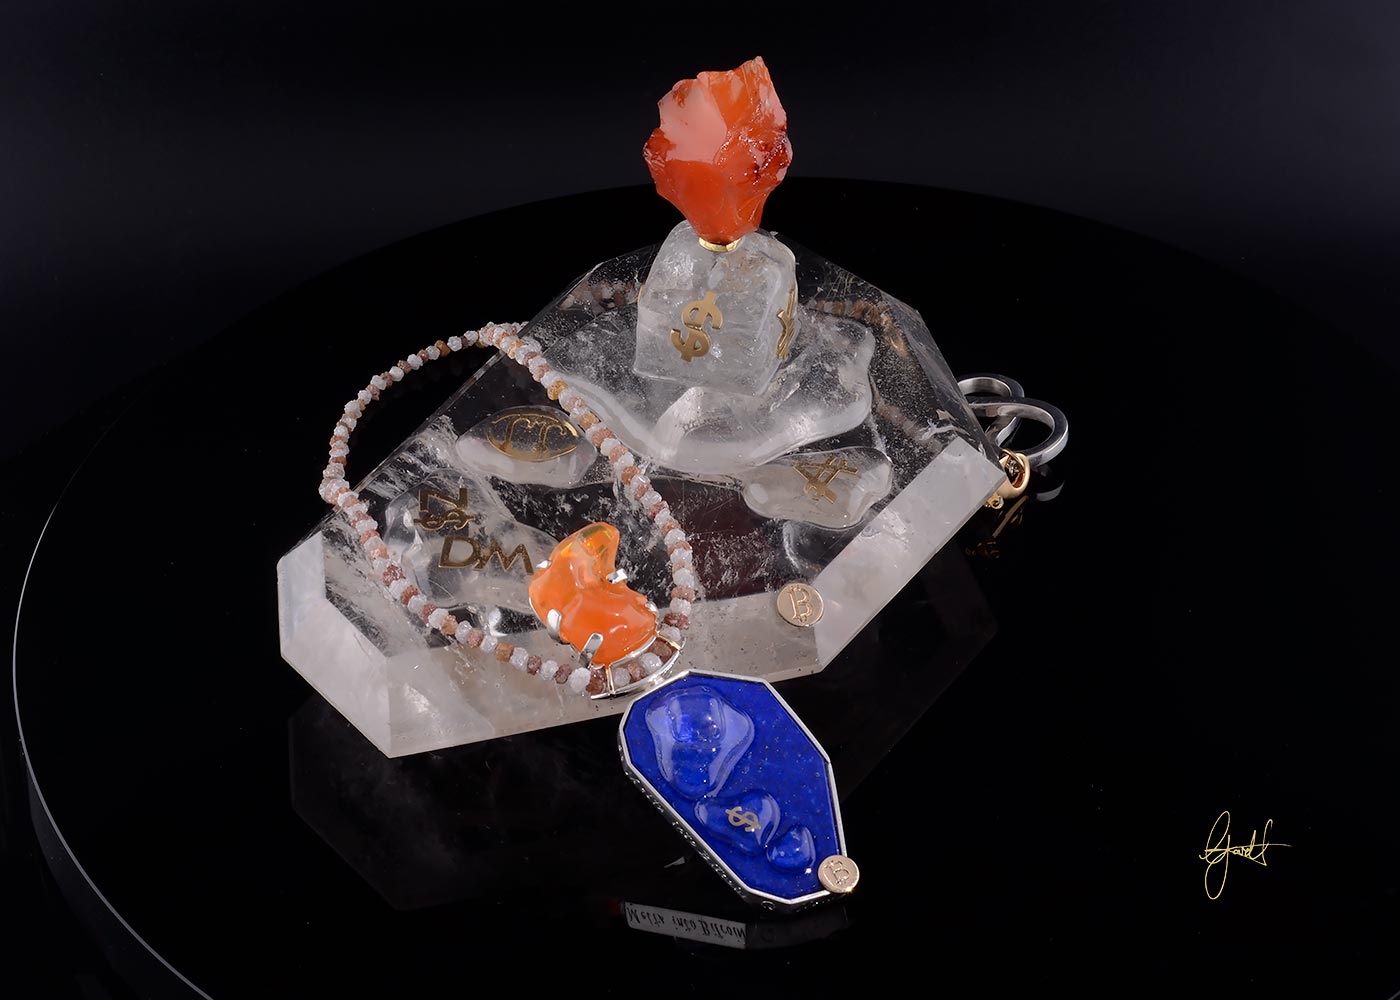 melting-ice-cube-gem-artwork-necklace-web-V2